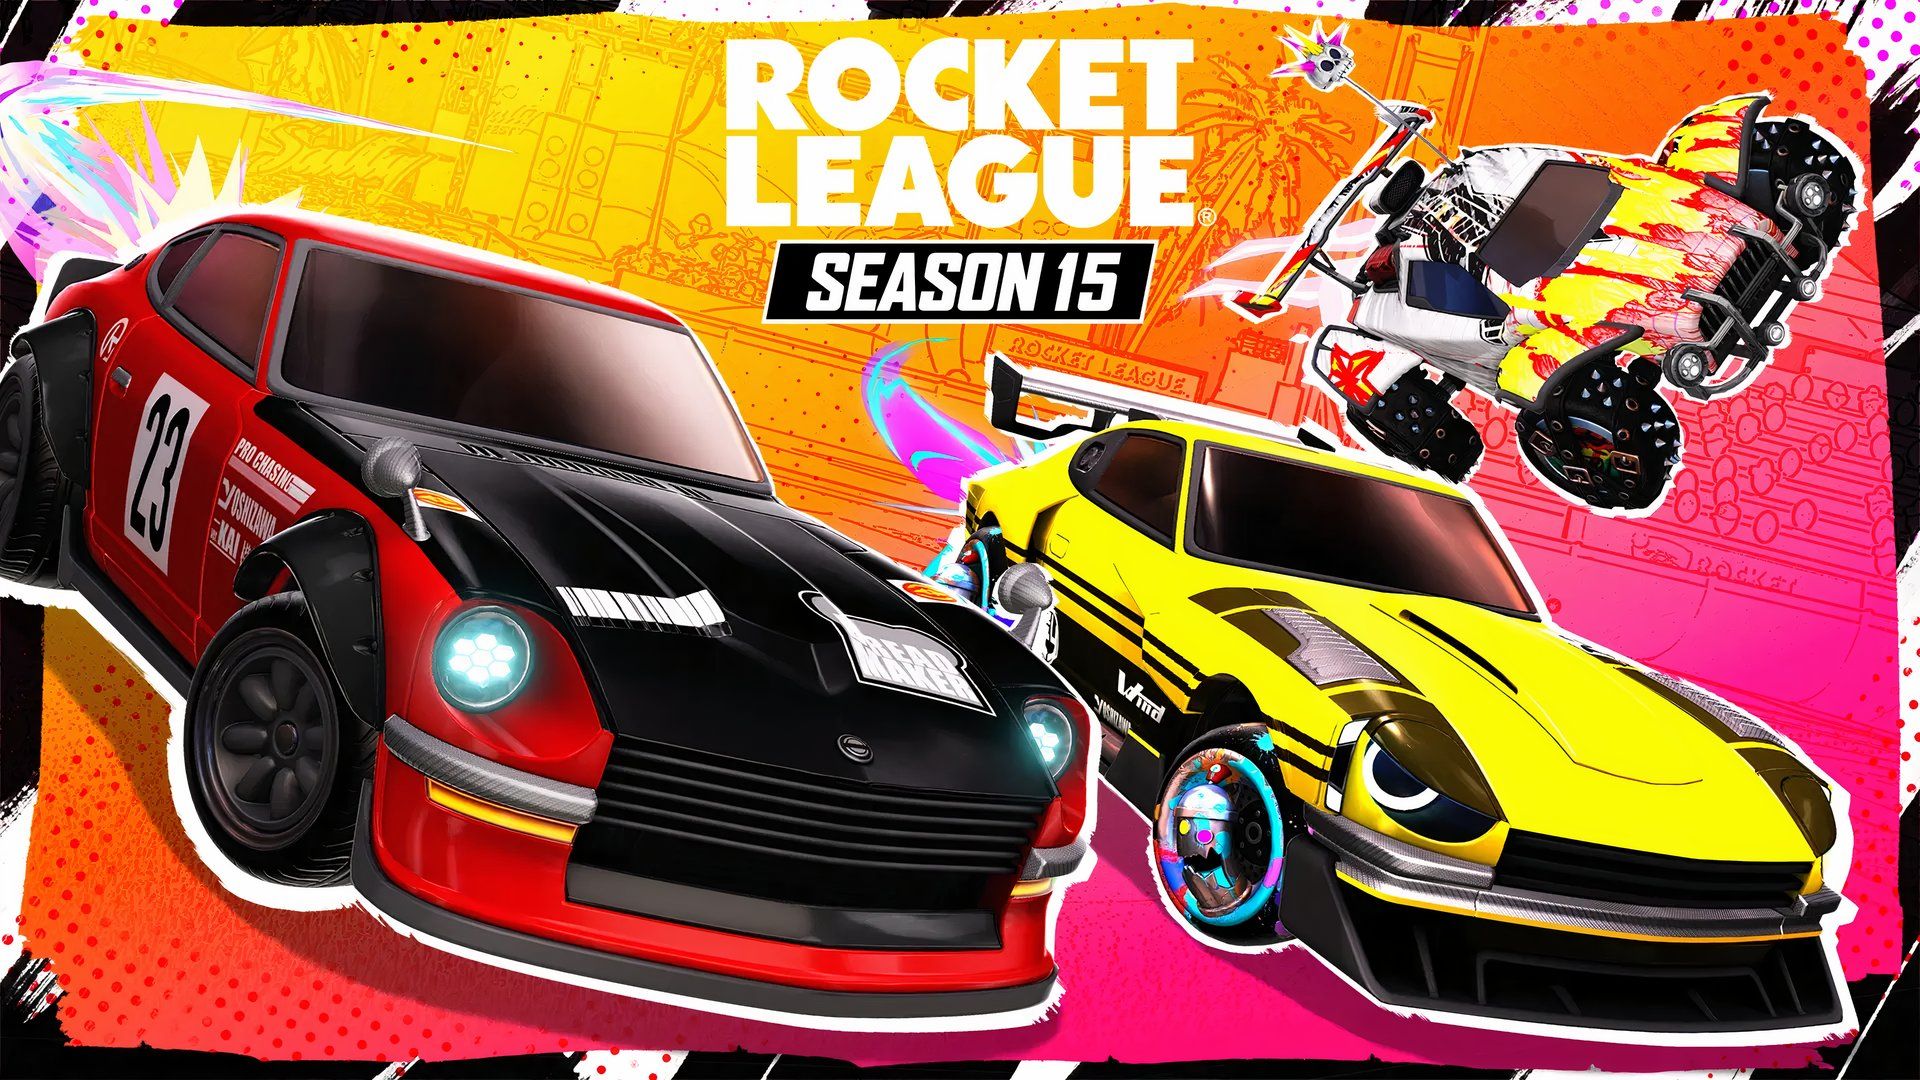 Arte oficial da 15ª temporada da Rocket League apresentando carros esportivos vermelhos, pretos e amarelos com trilhas rosa neon em primeiro plano